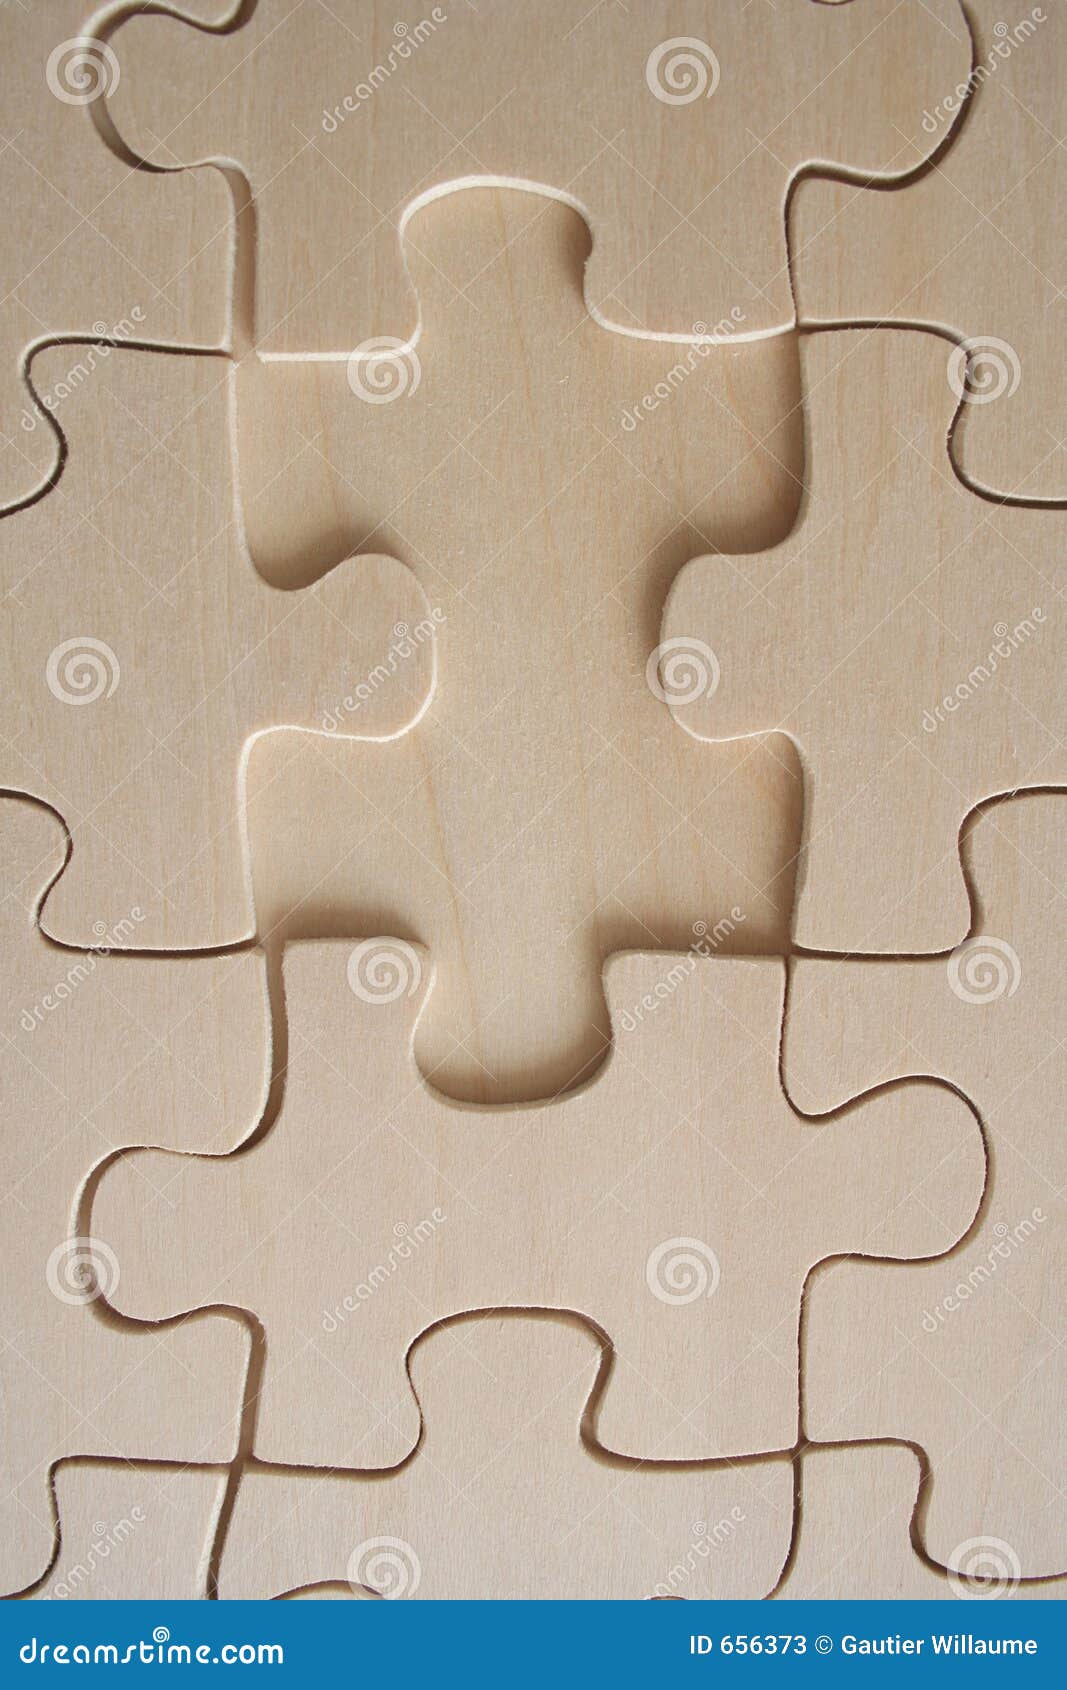 Wood jigsaw piece